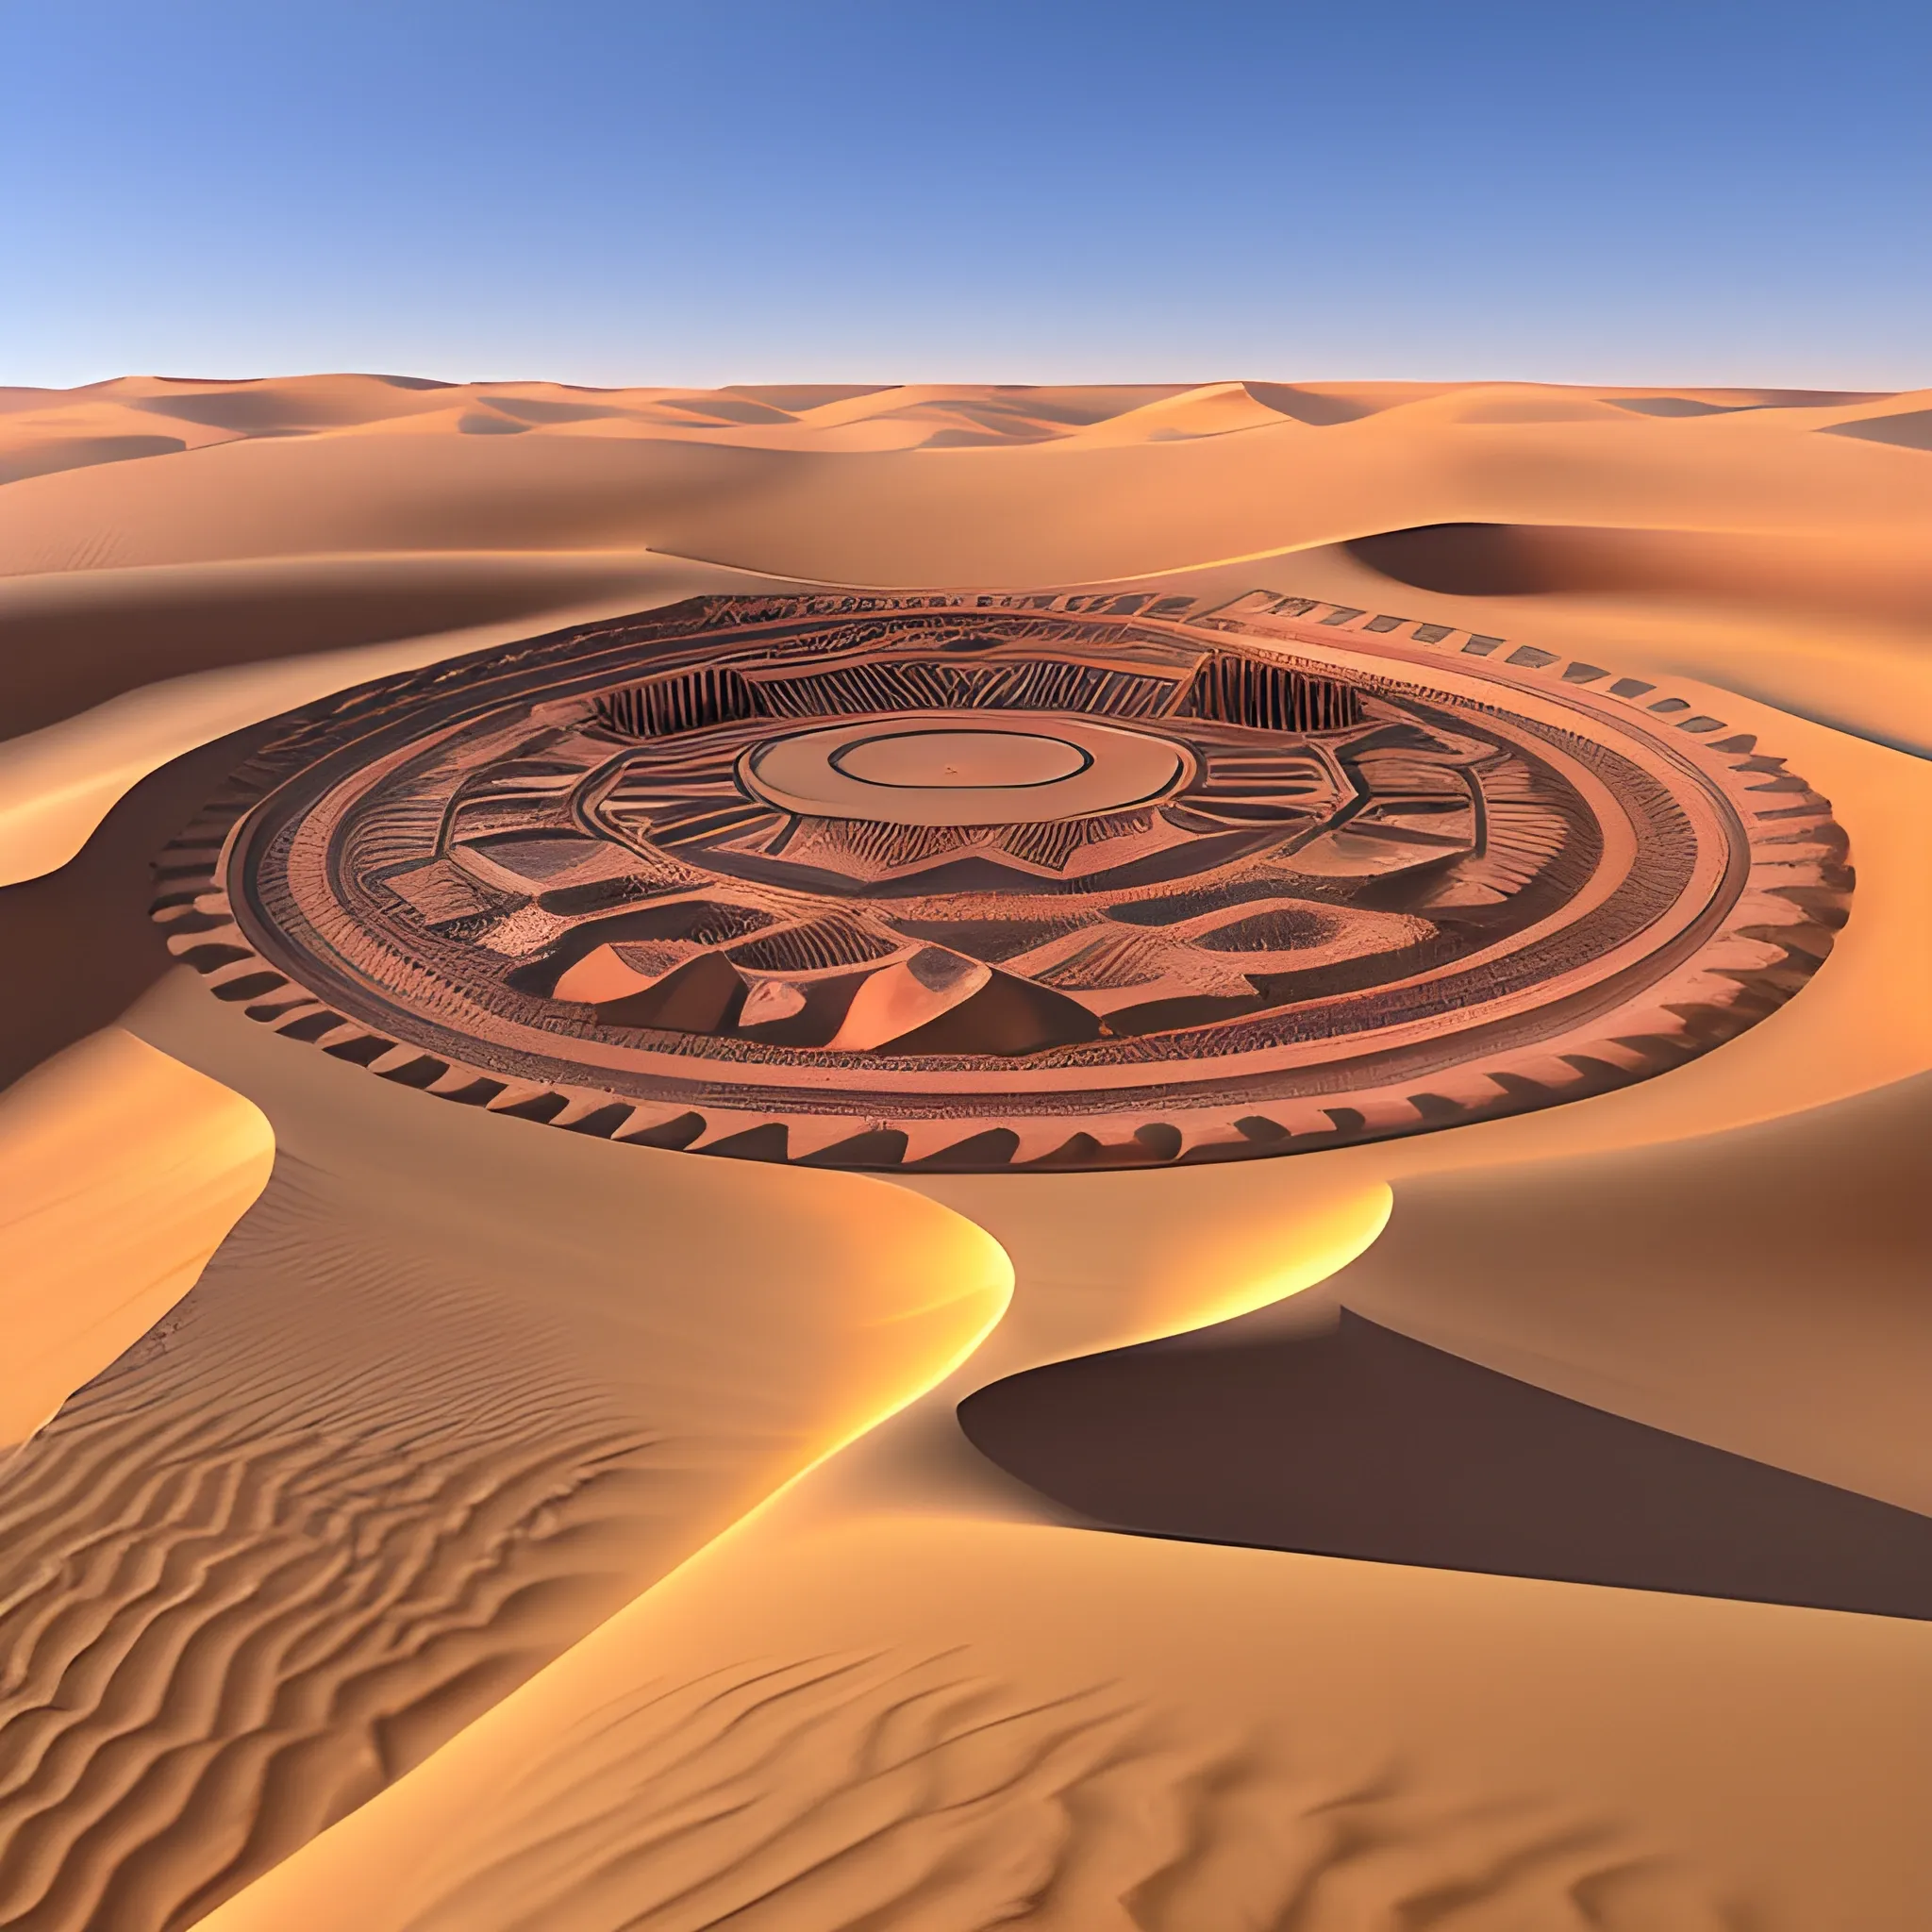 islamique
desert
Morocco
 3D
King Mohammed VI
